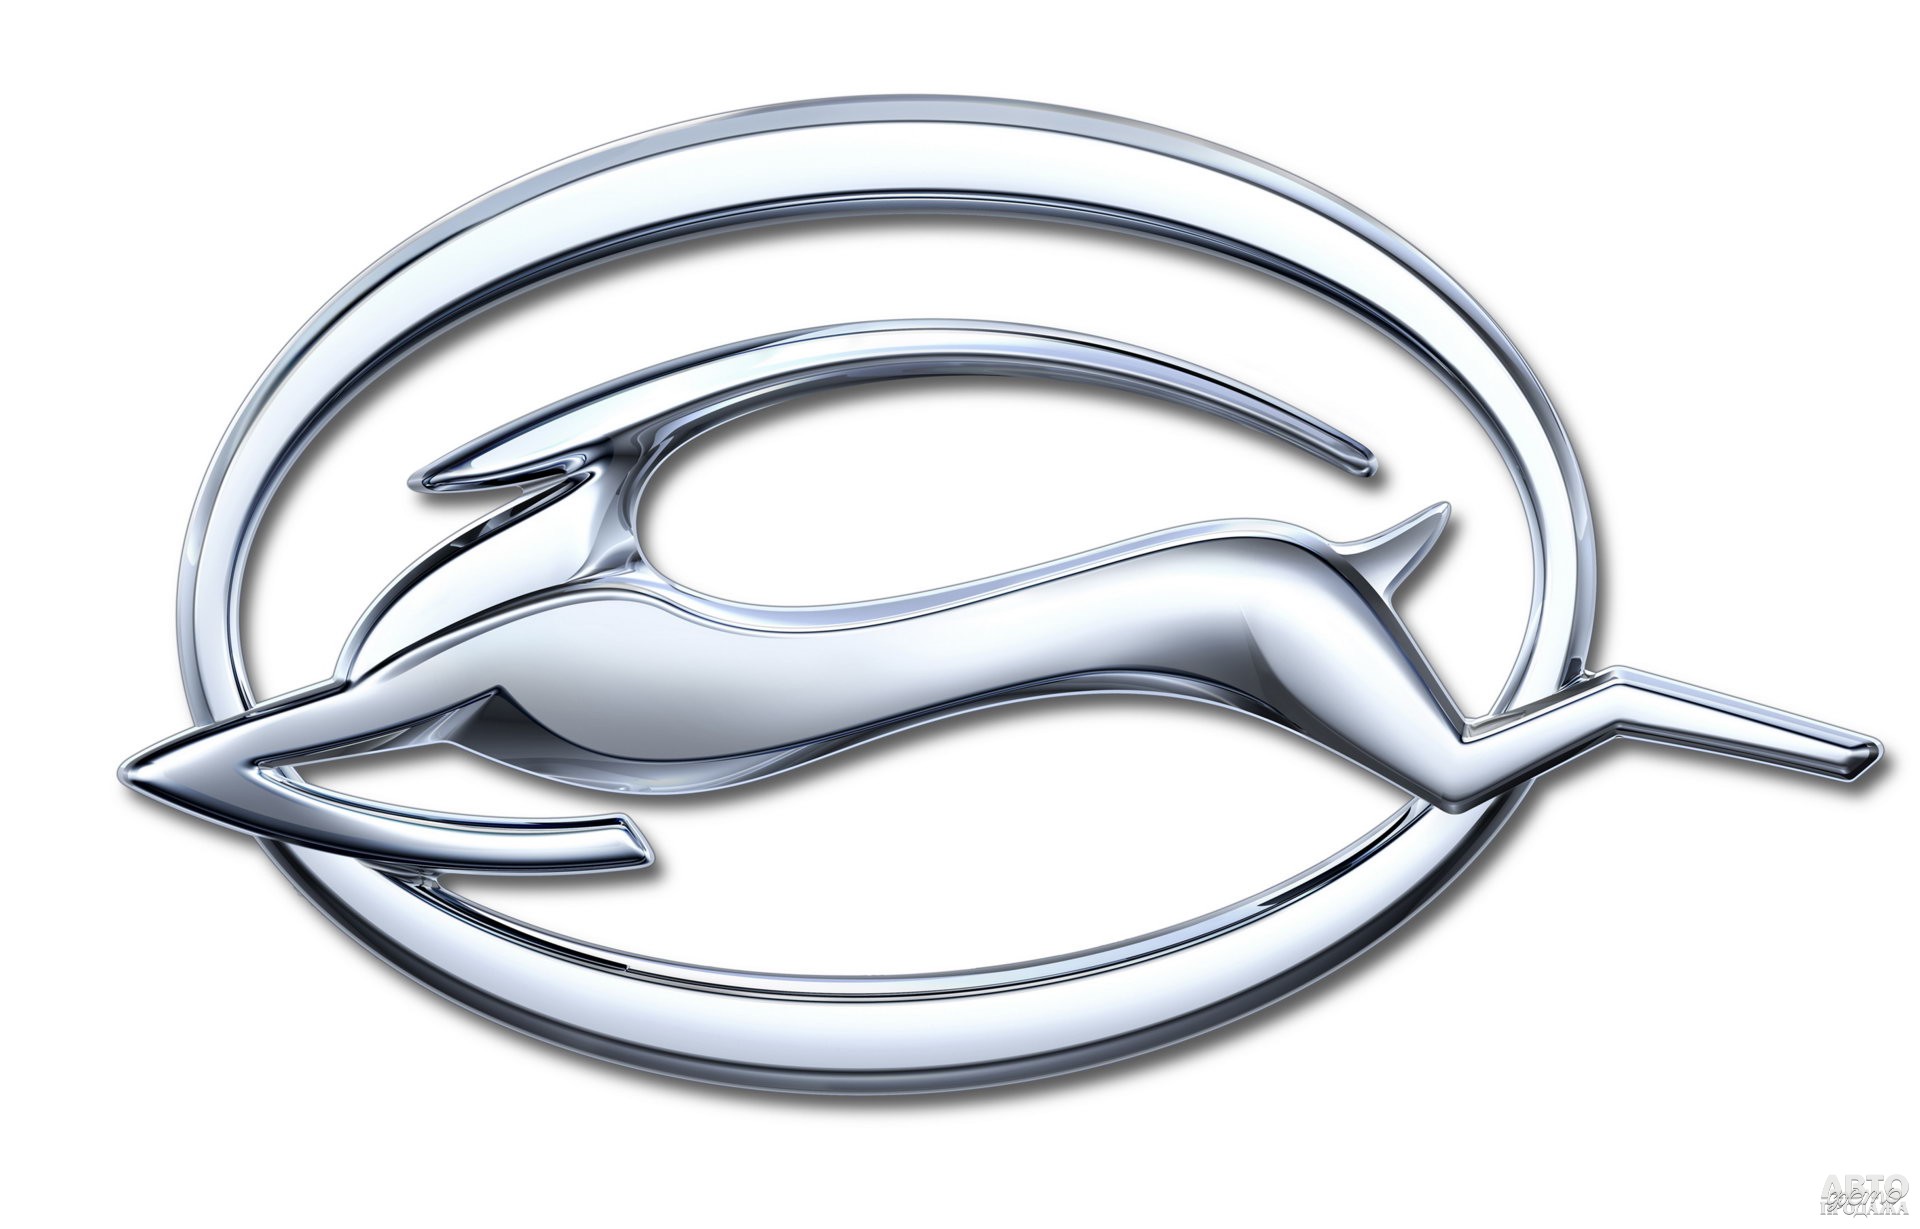 Chevrolet_Impala назвали в честь африканской антилопы, что отображено в логотипе модели